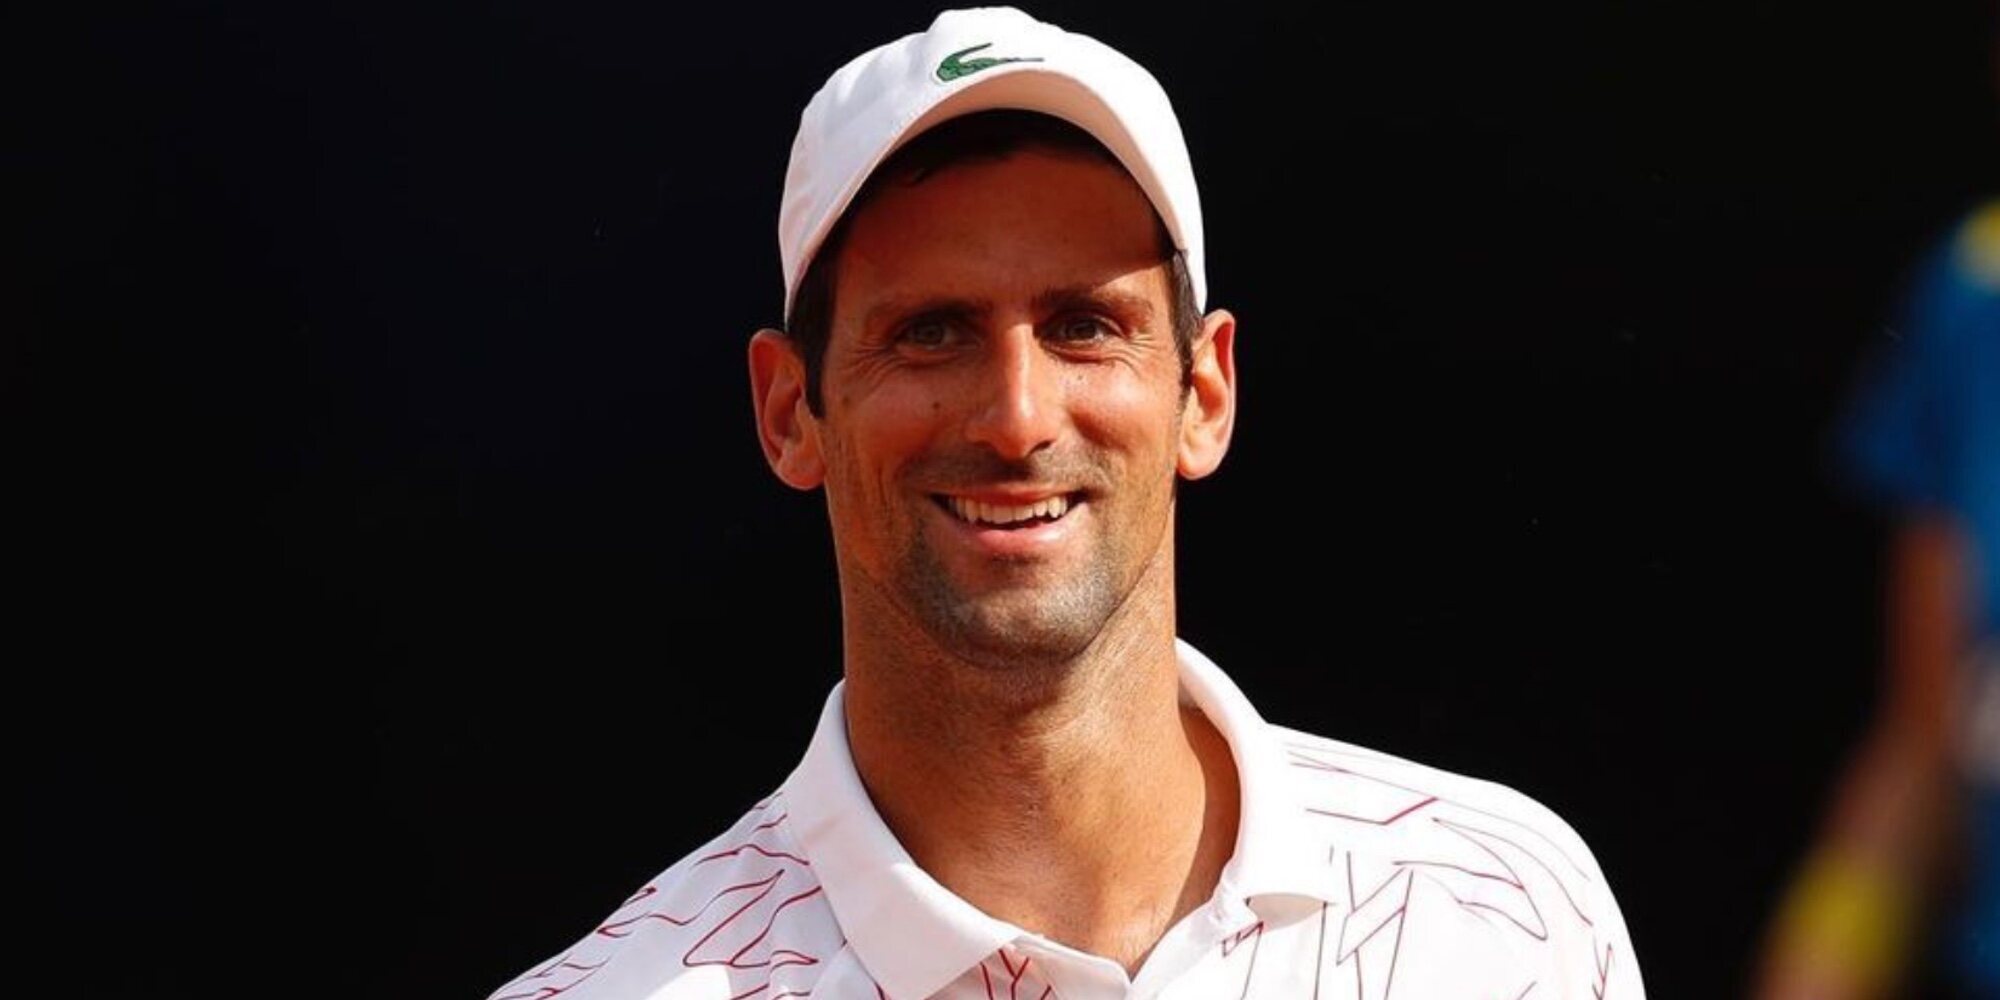 Novak Djokovic compra parte de una compañía farmacéutica de tratamientos contra el Covid siendo antivacunas